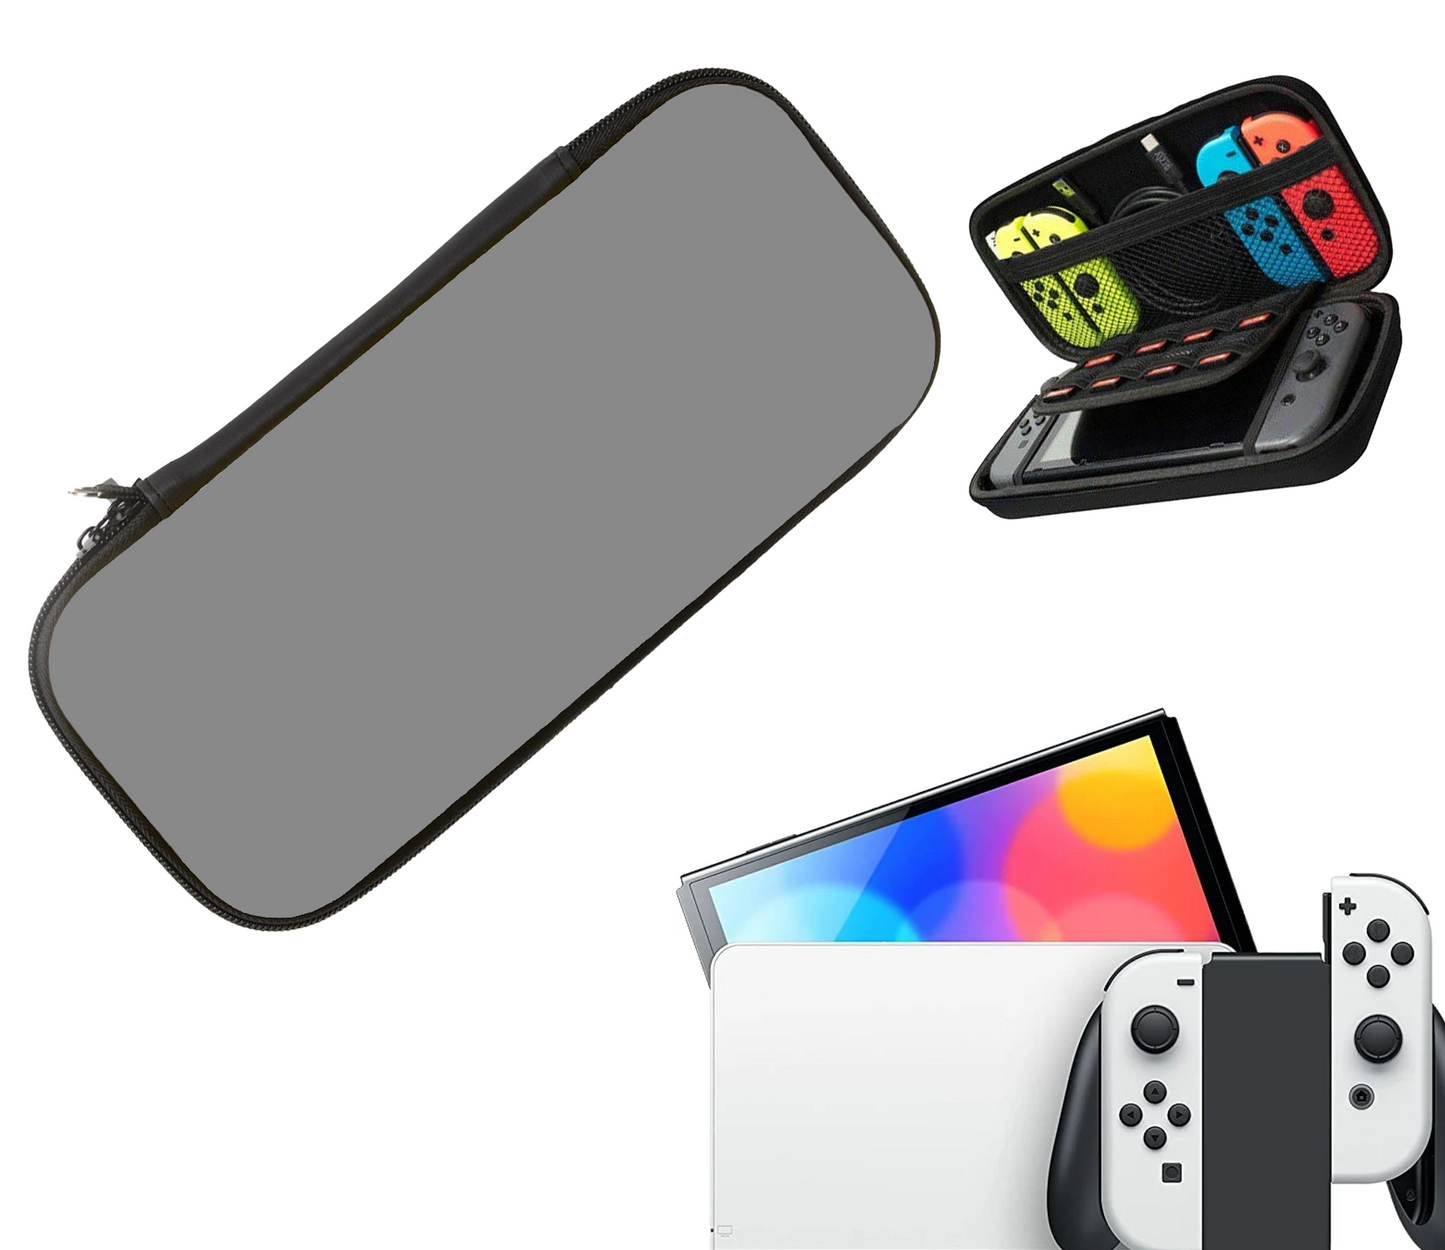 Schutzhülle | Hartschalen-Aufbewahrungshülle | Fall | Grau - Grau | Zubehör passend für Nintendo Switch